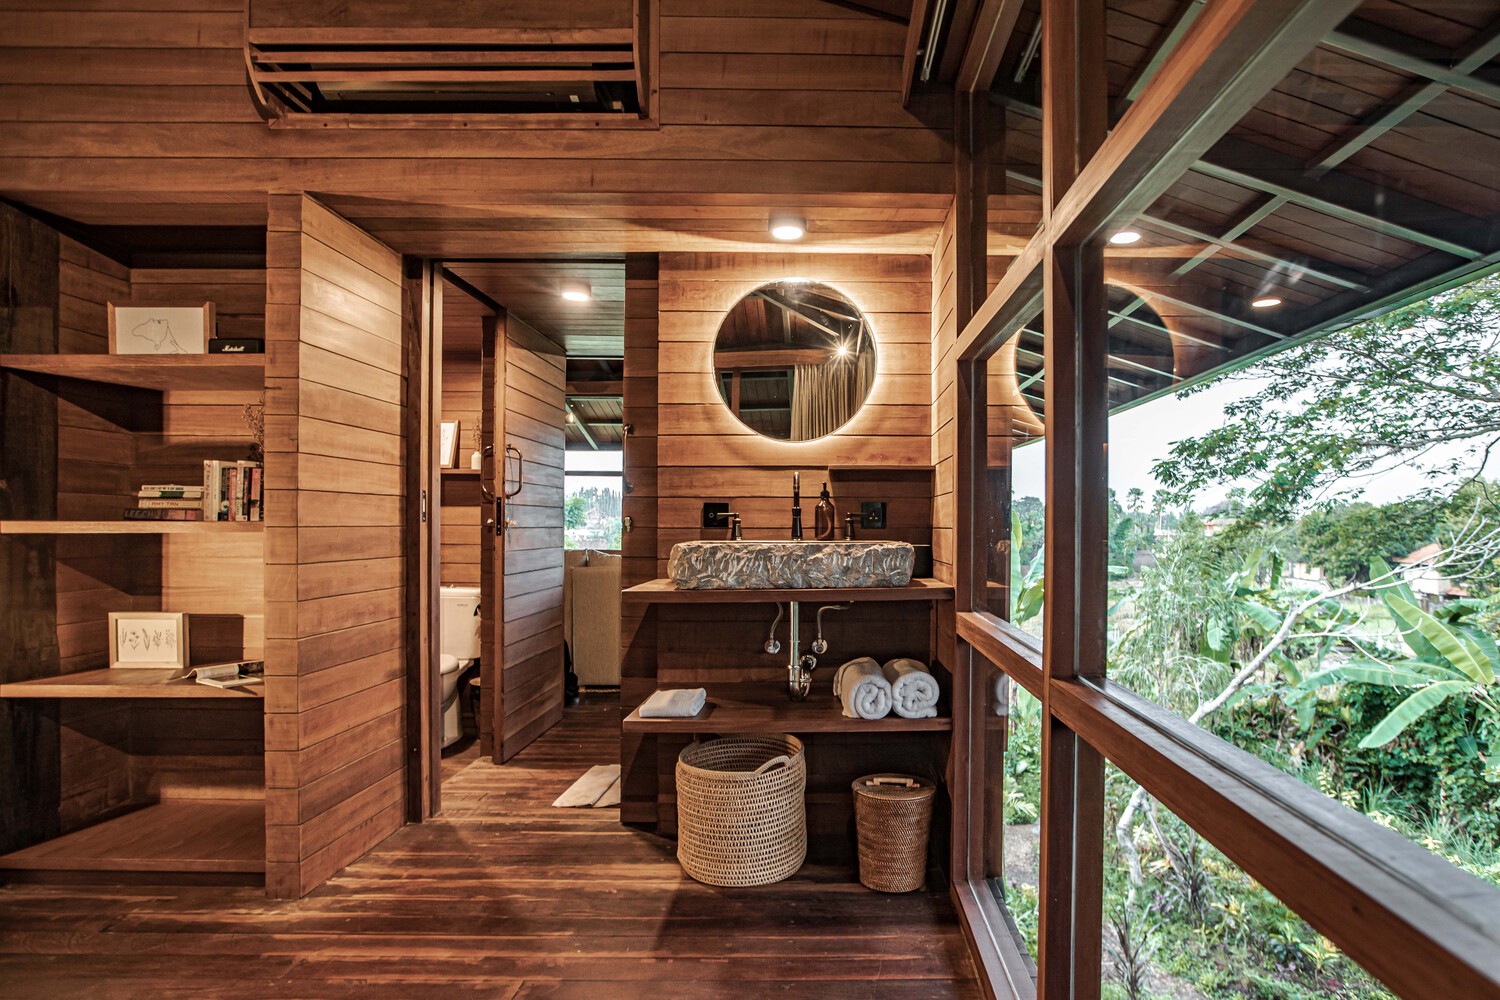 Ngôi nhà gỗ hình cái cây độc đáo ở Bali, nằm lọt thỏm giữa khu vườn nhiệt đới đầy bình yên - Ảnh 6.